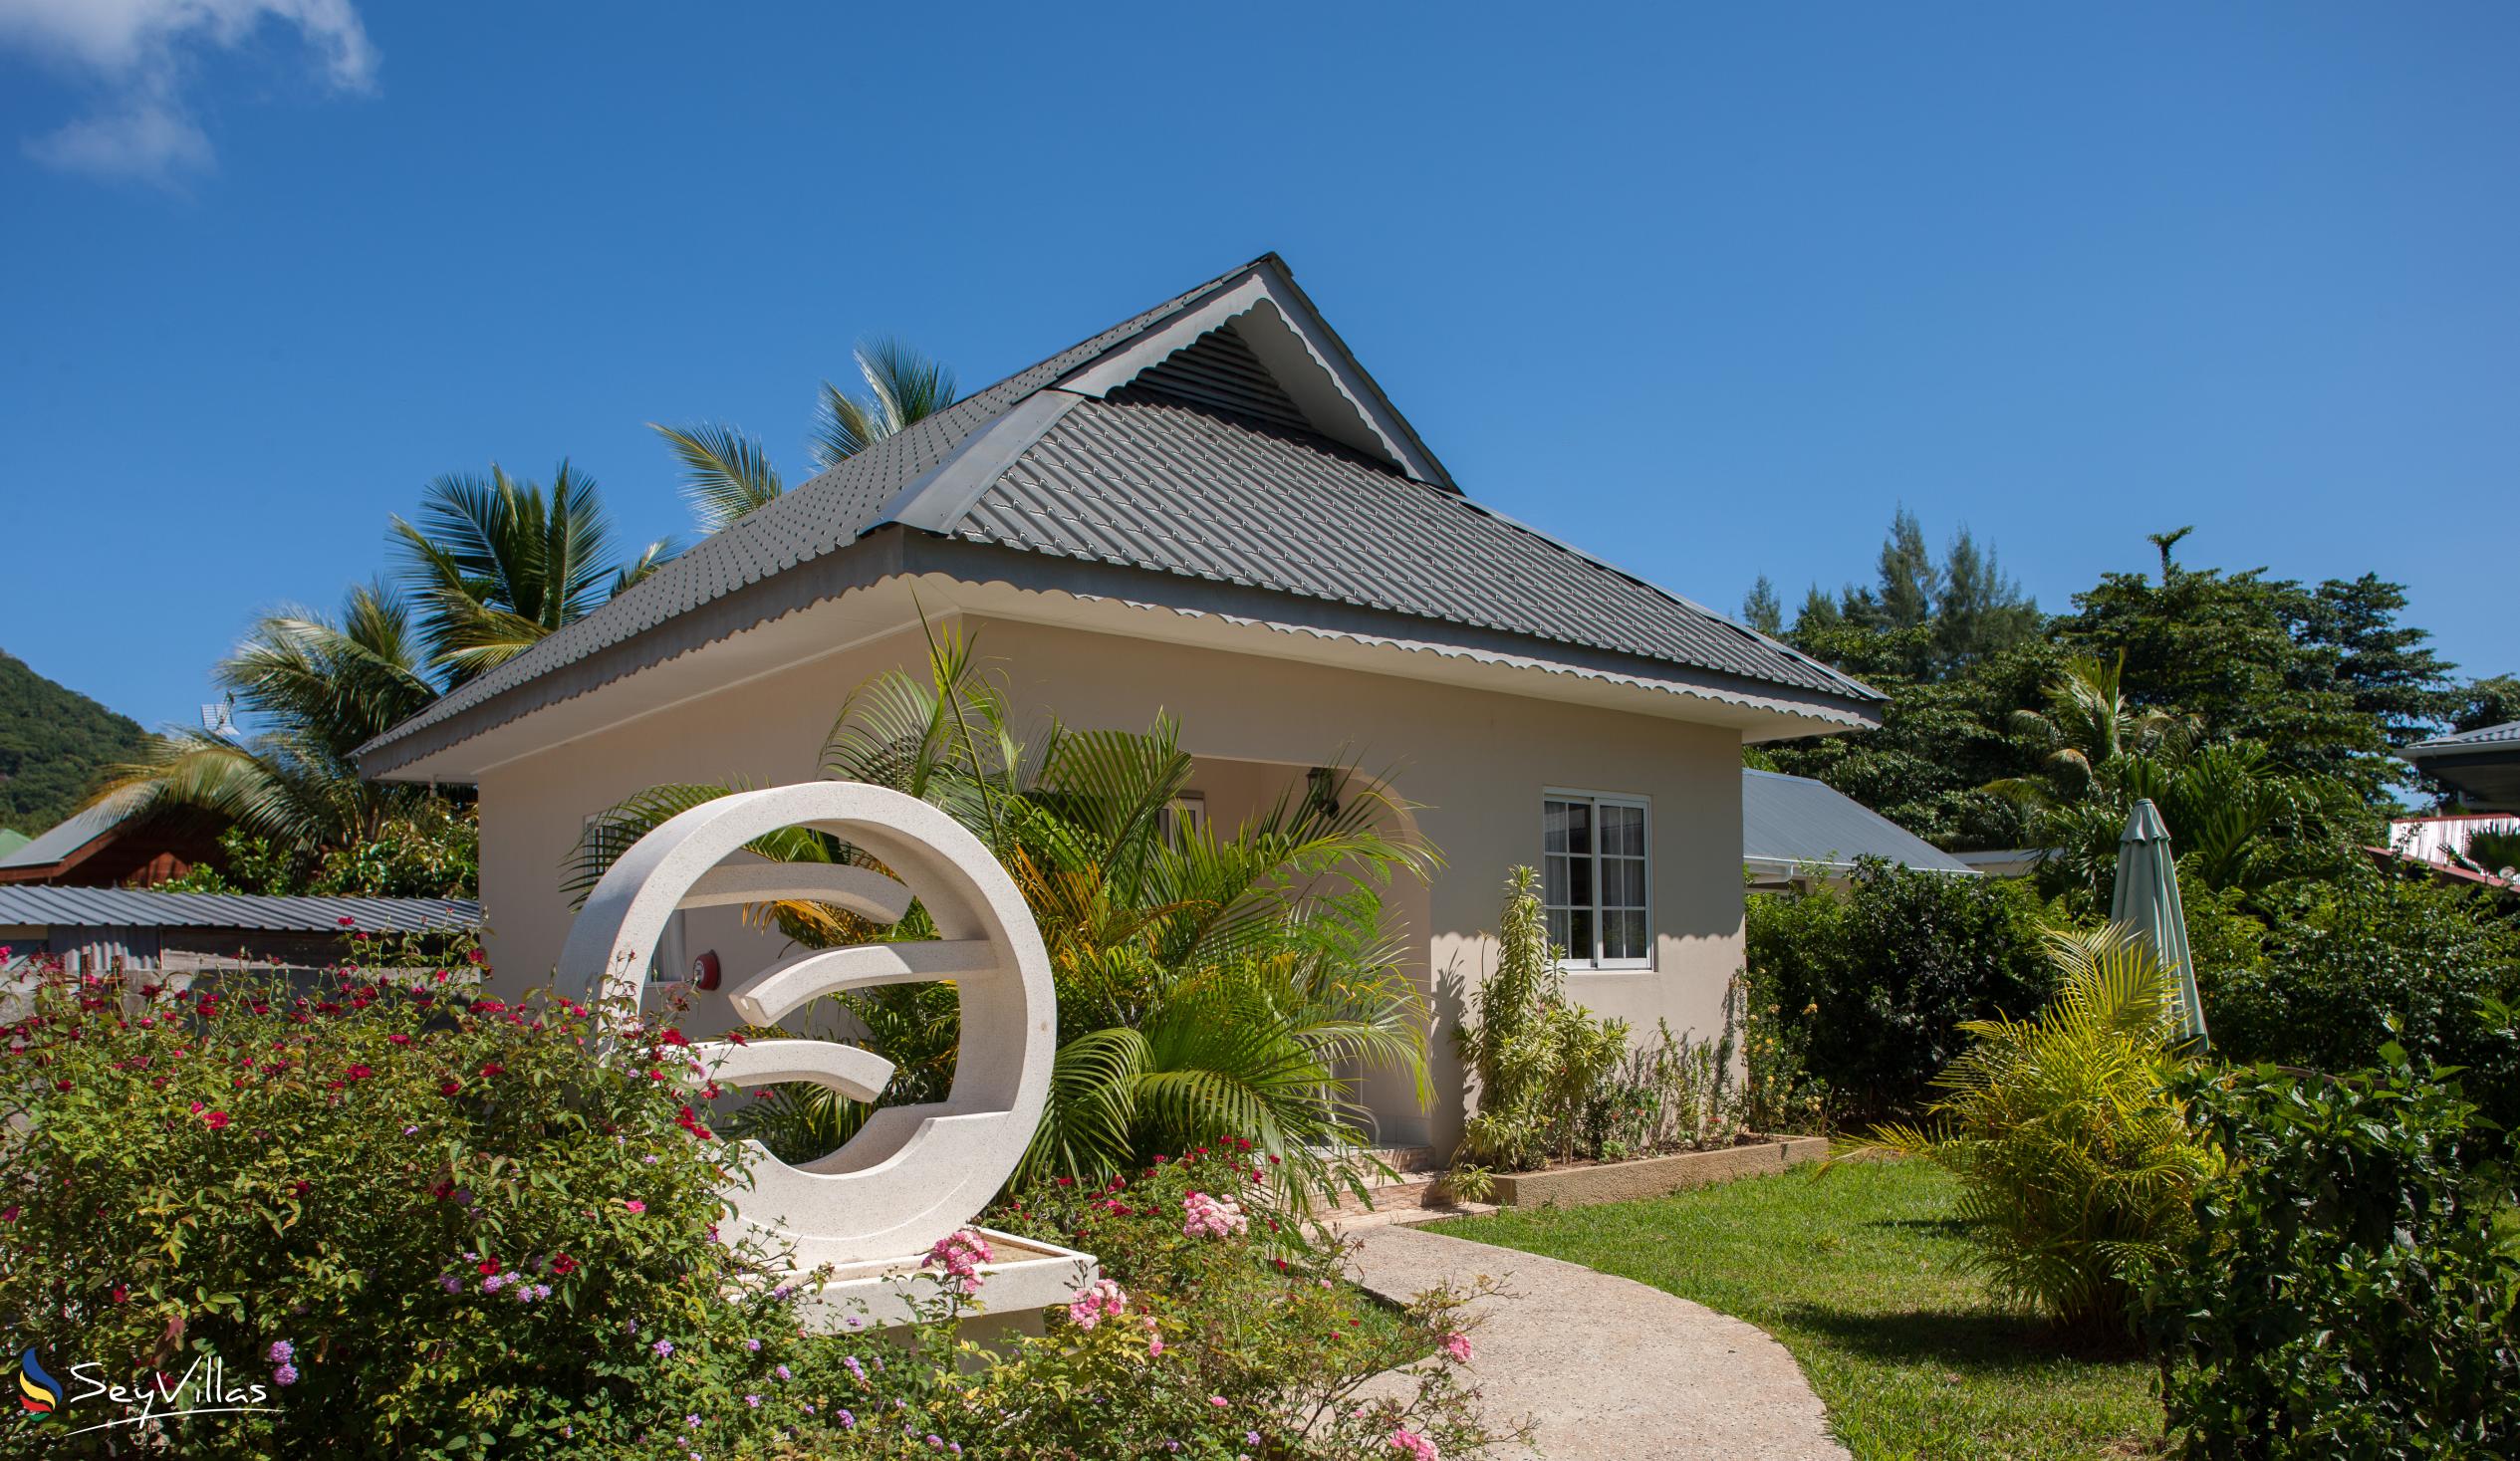 Foto 6: Villa Source D'Argent - Esterno - La Digue (Seychelles)